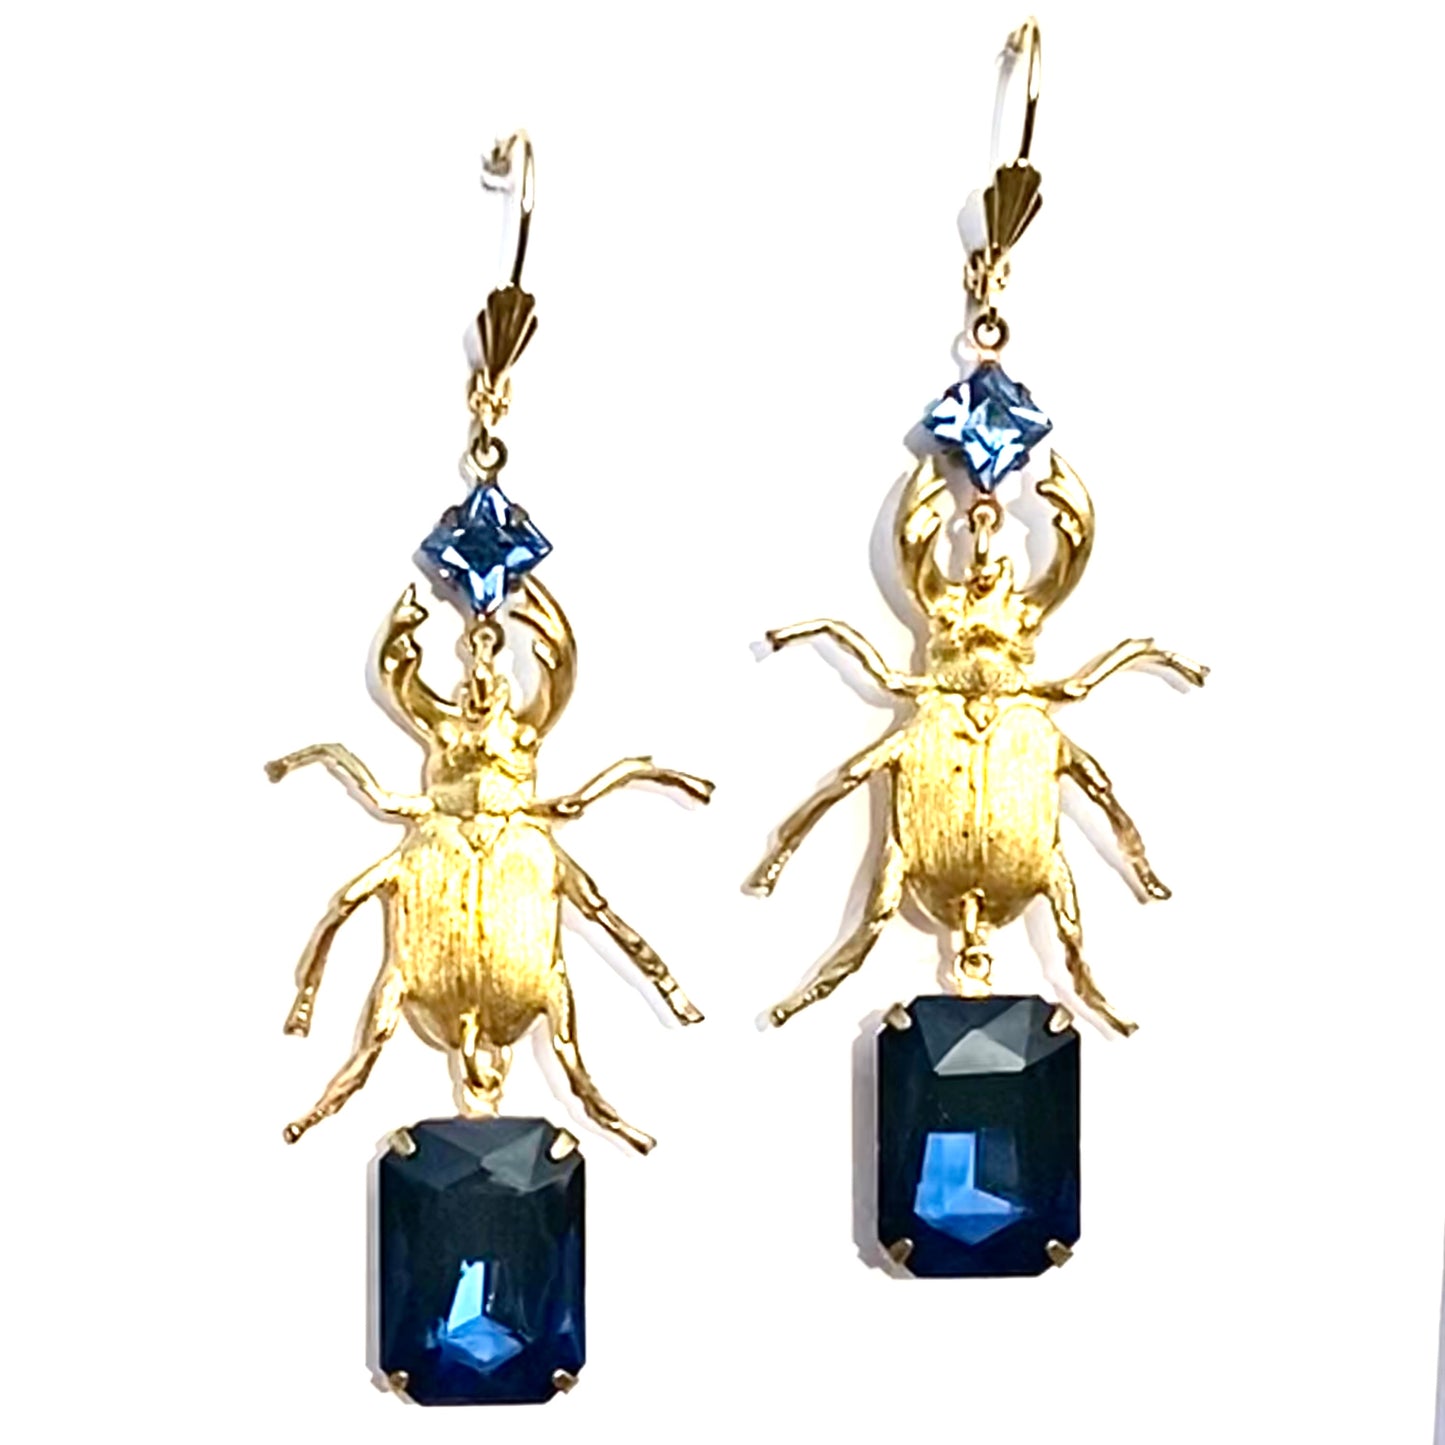 Beetle bug earrings